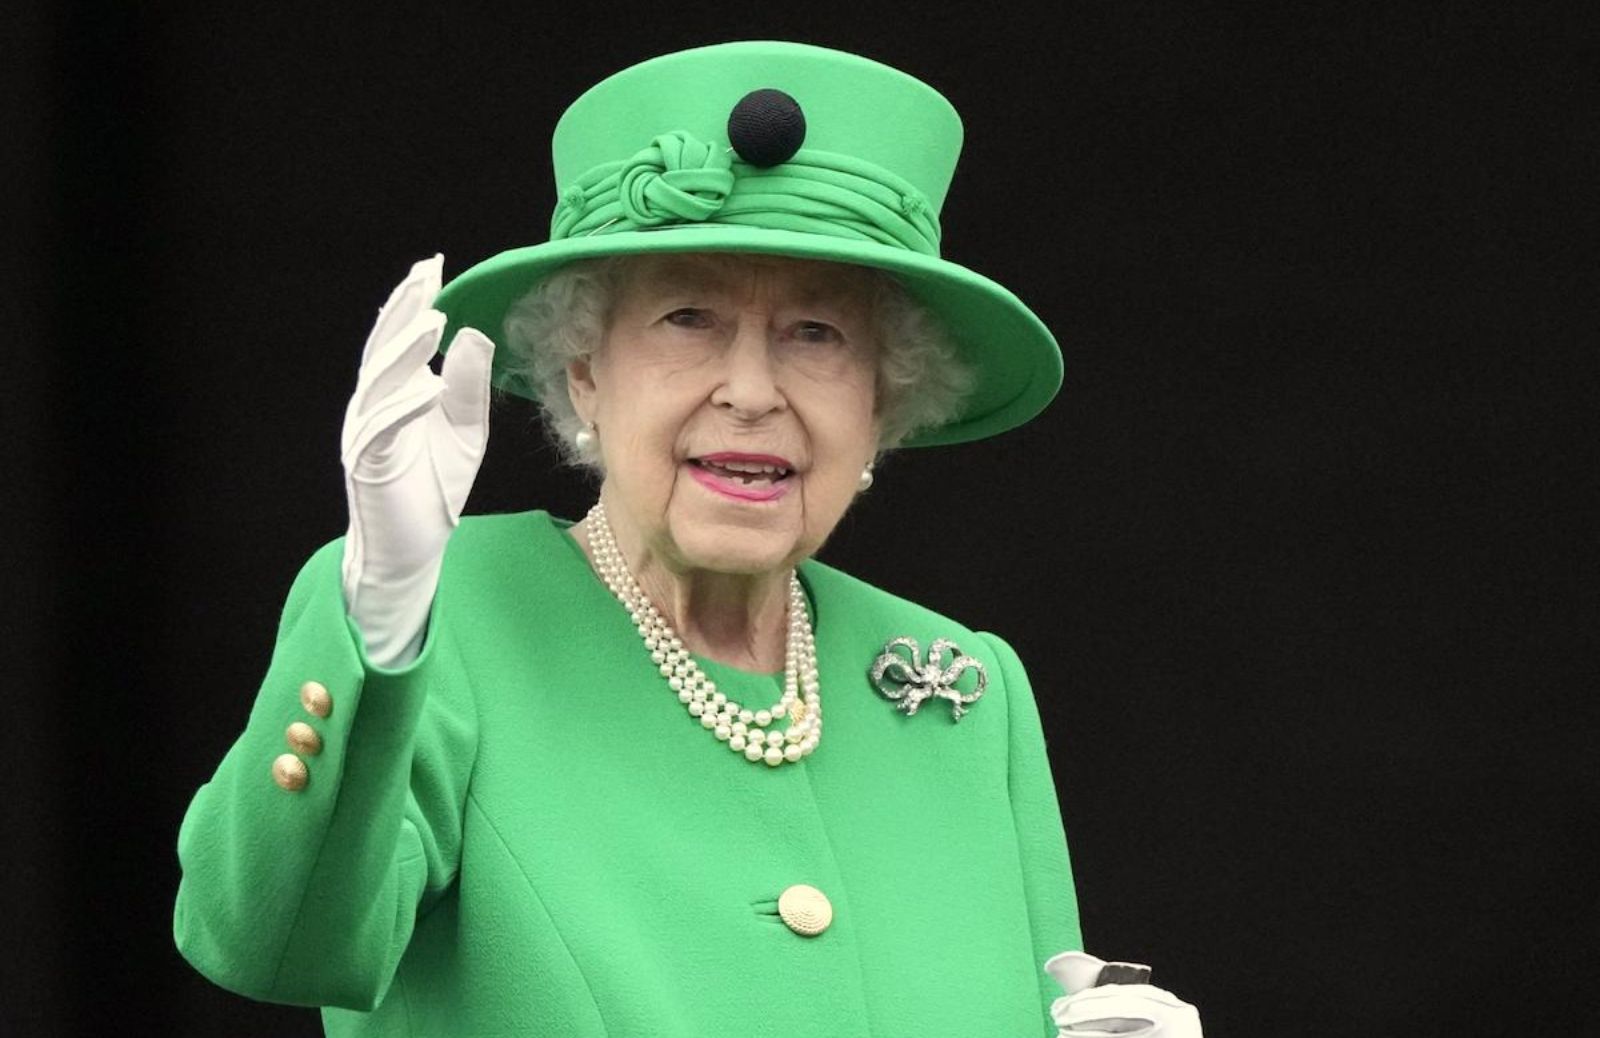 Addio Elisabetta II, regina per sempre